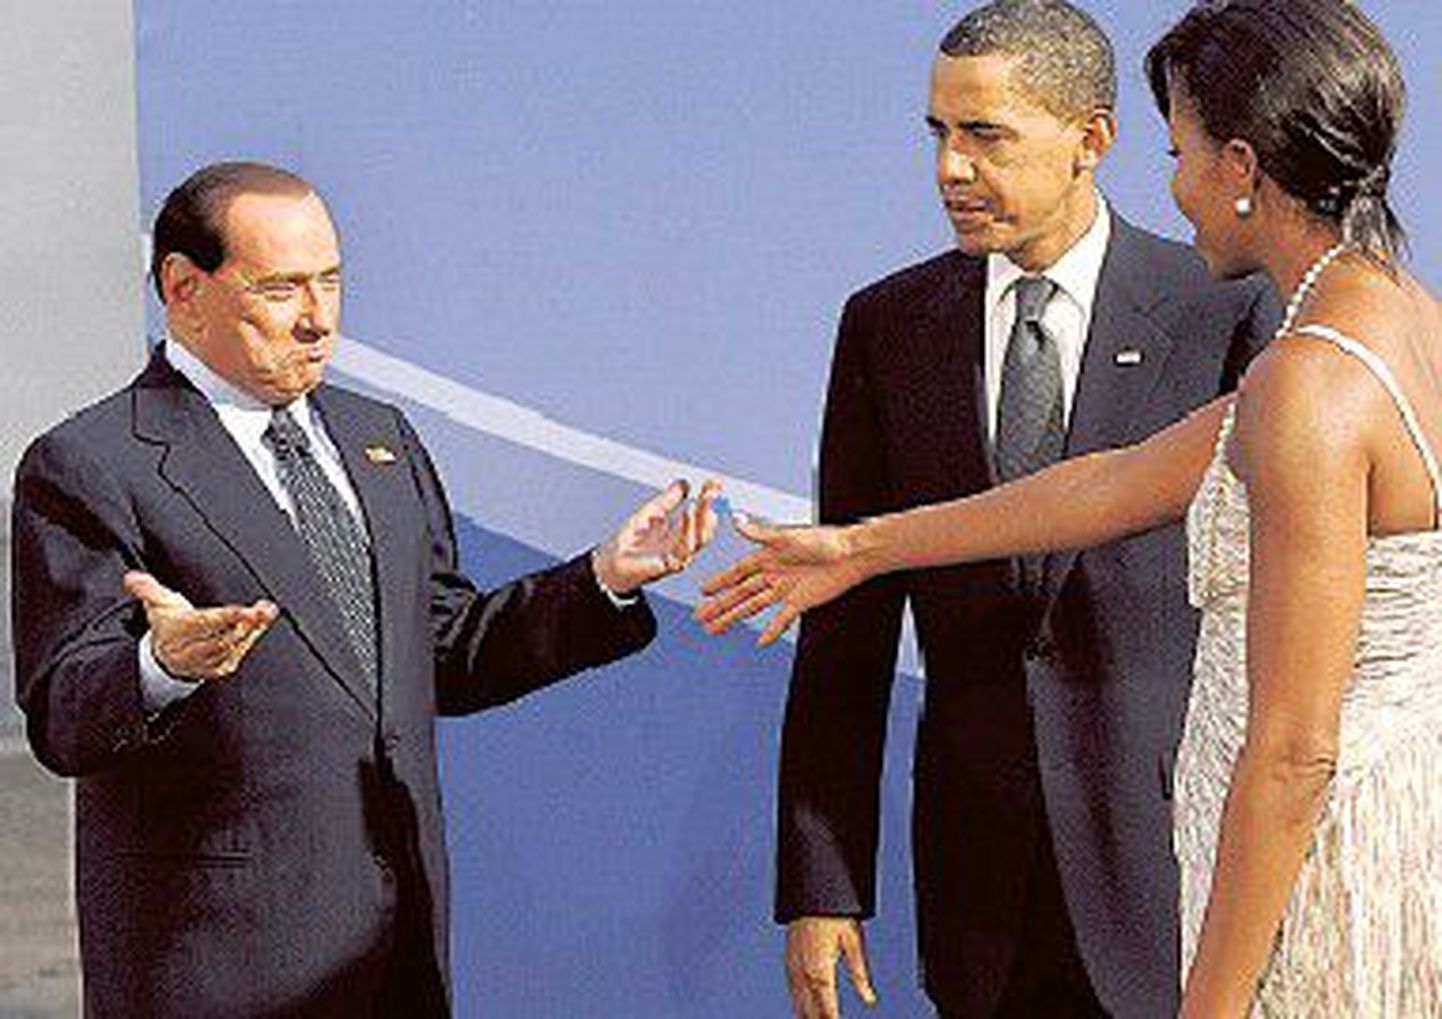 Päevitunud paar: Silvio Berlusconi tunnetamas, kas tema imeline külgetõmbejõud mõjub Michelle Obamale. Abikaasa Barack jälgib mängu kõrvalt.